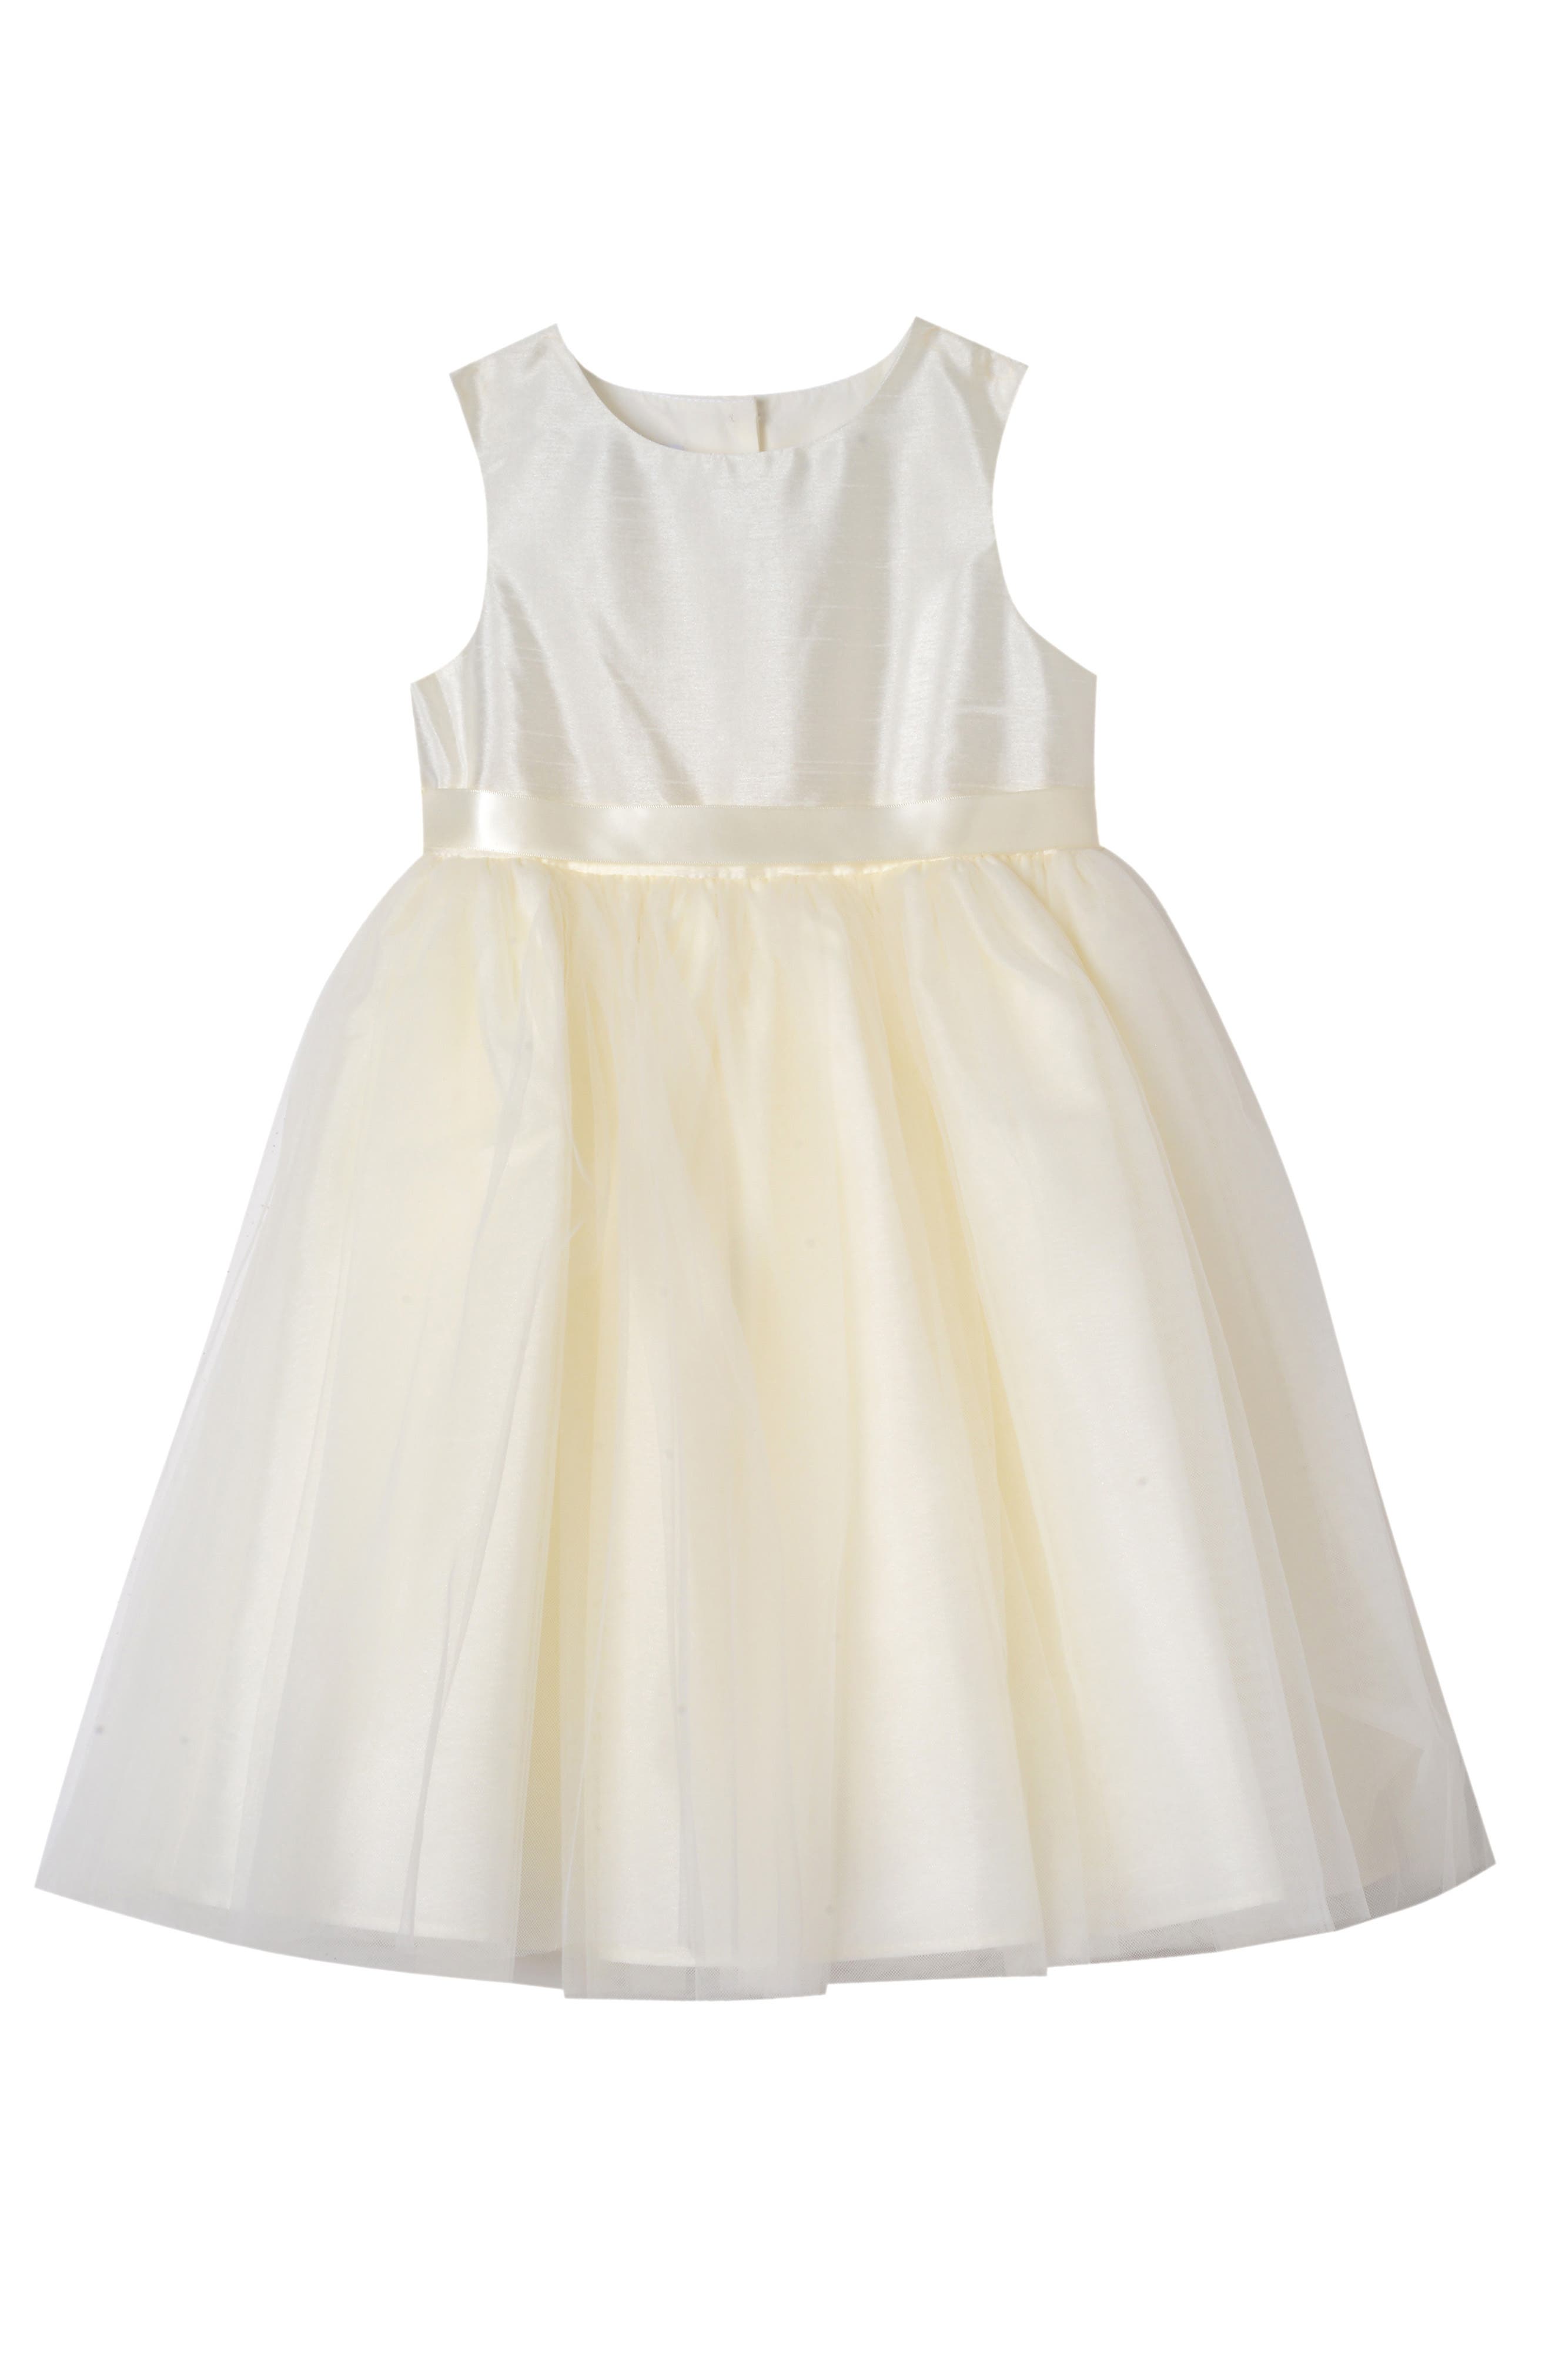 3t white flower girl dress